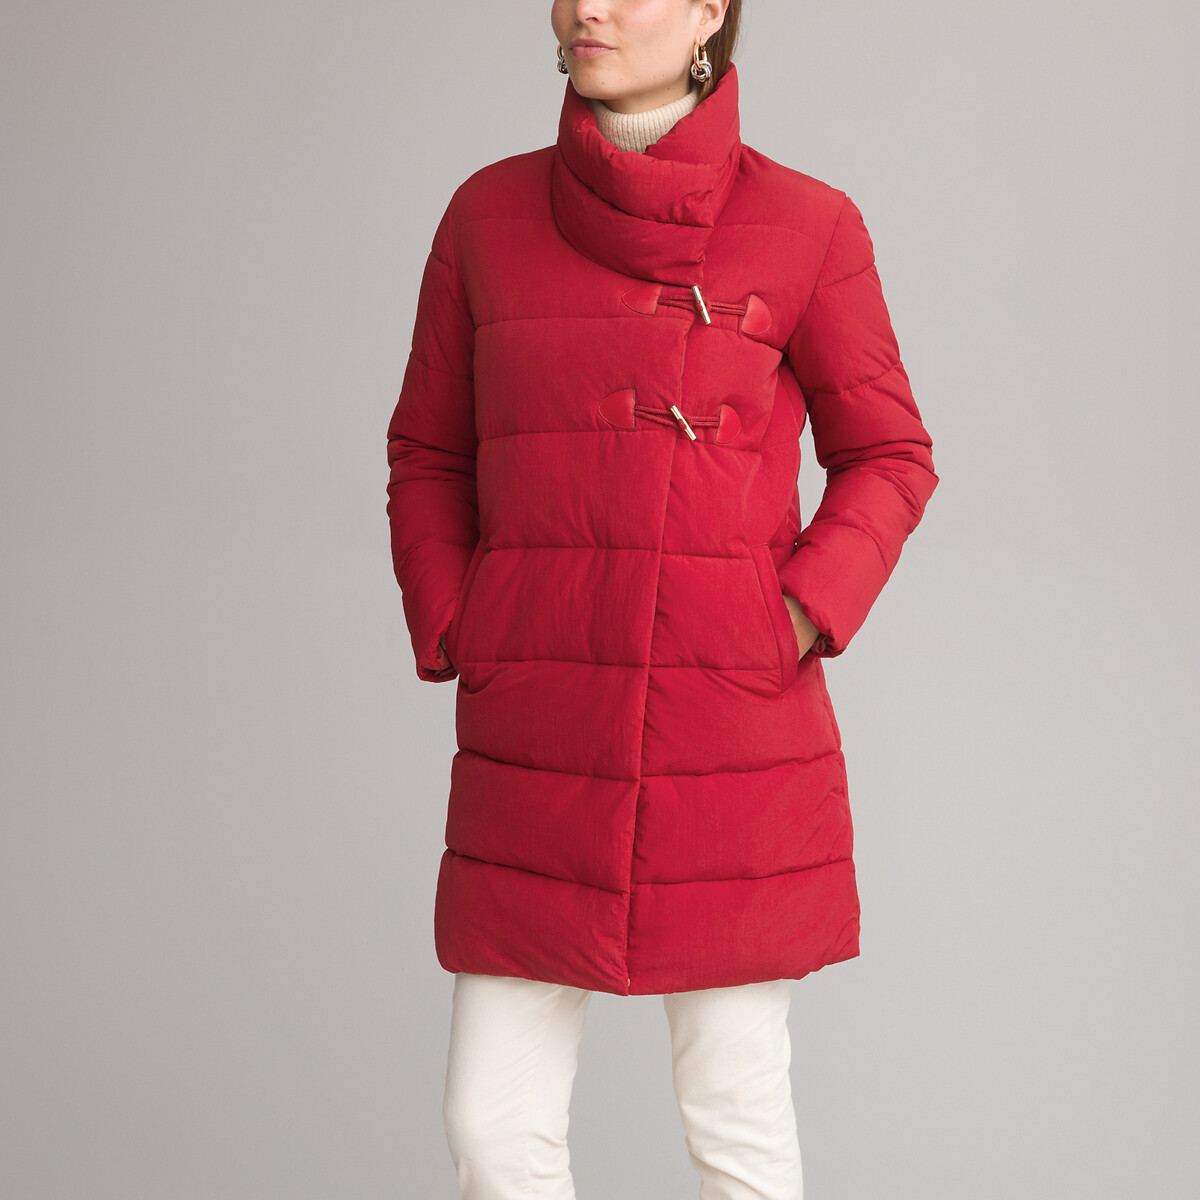 Куртка стеганая средней длины застежка на молнию зимняя модель 38 (FR) - 44 (RUS) красный куртка стеганая средней длины застежка на молнию зимняя модель 40 fr 46 rus красный